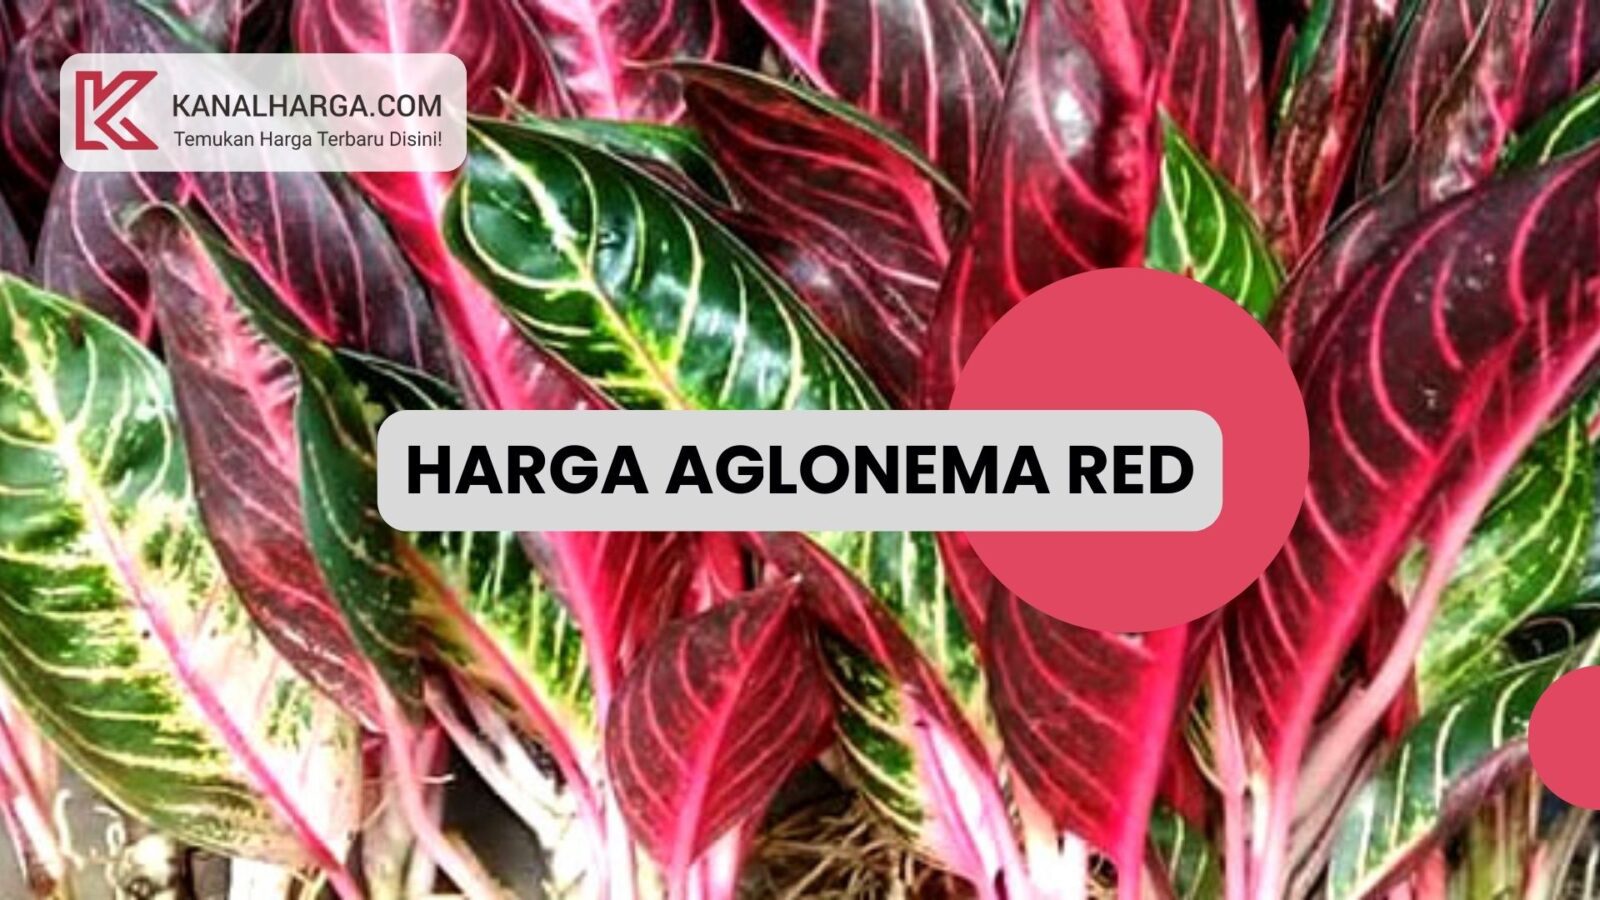 aglonema red Cara Budidaya dan Harga Aglonema Red Sumatra – KanalHarga.com